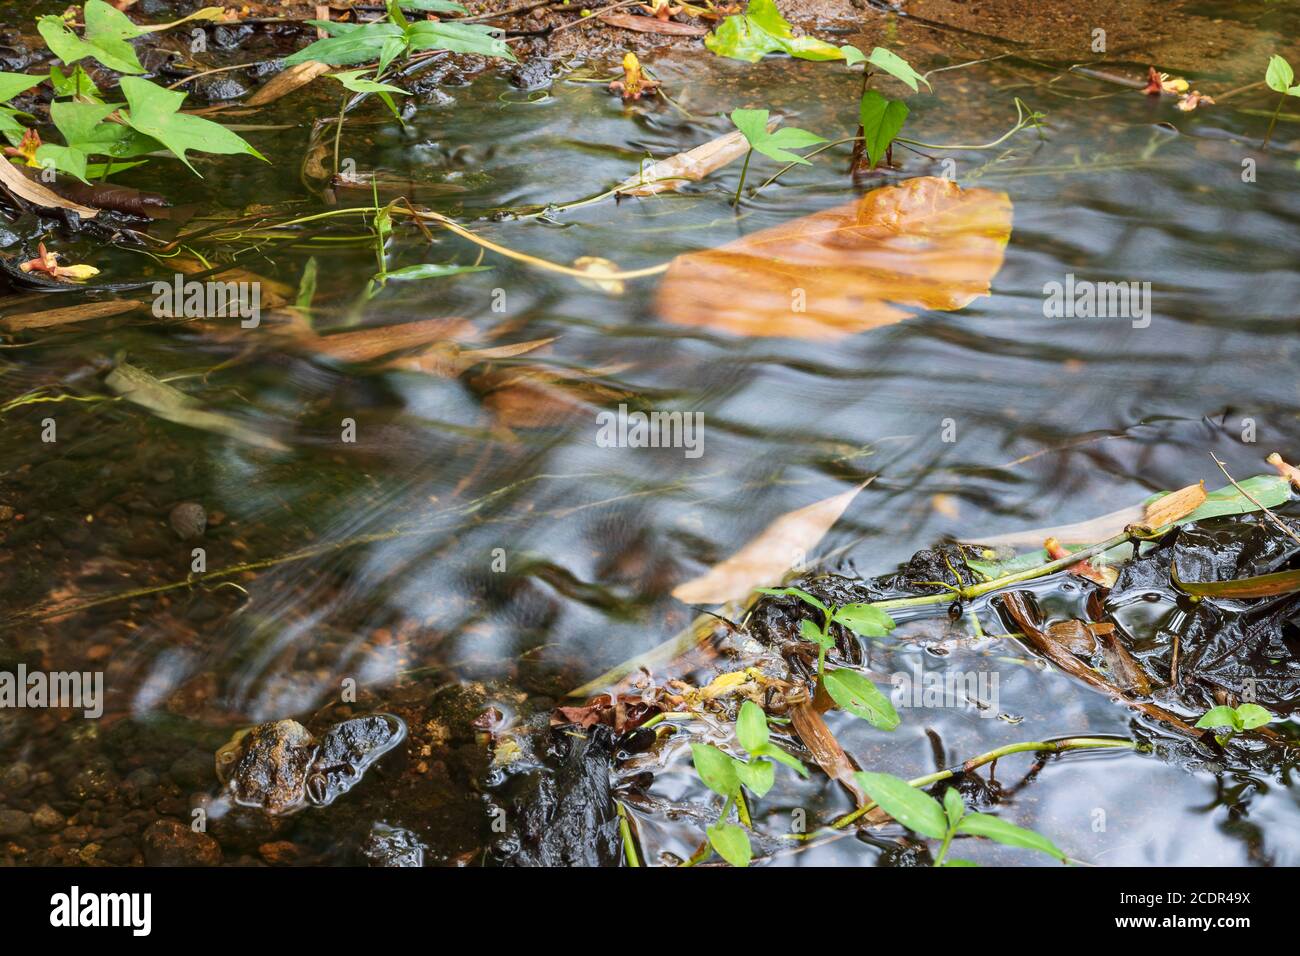 Superficie liscia e setosa dell'acqua che scorre in un ruscello con foglie essiccate attaccate al fondo con pietre lisce Foto Stock